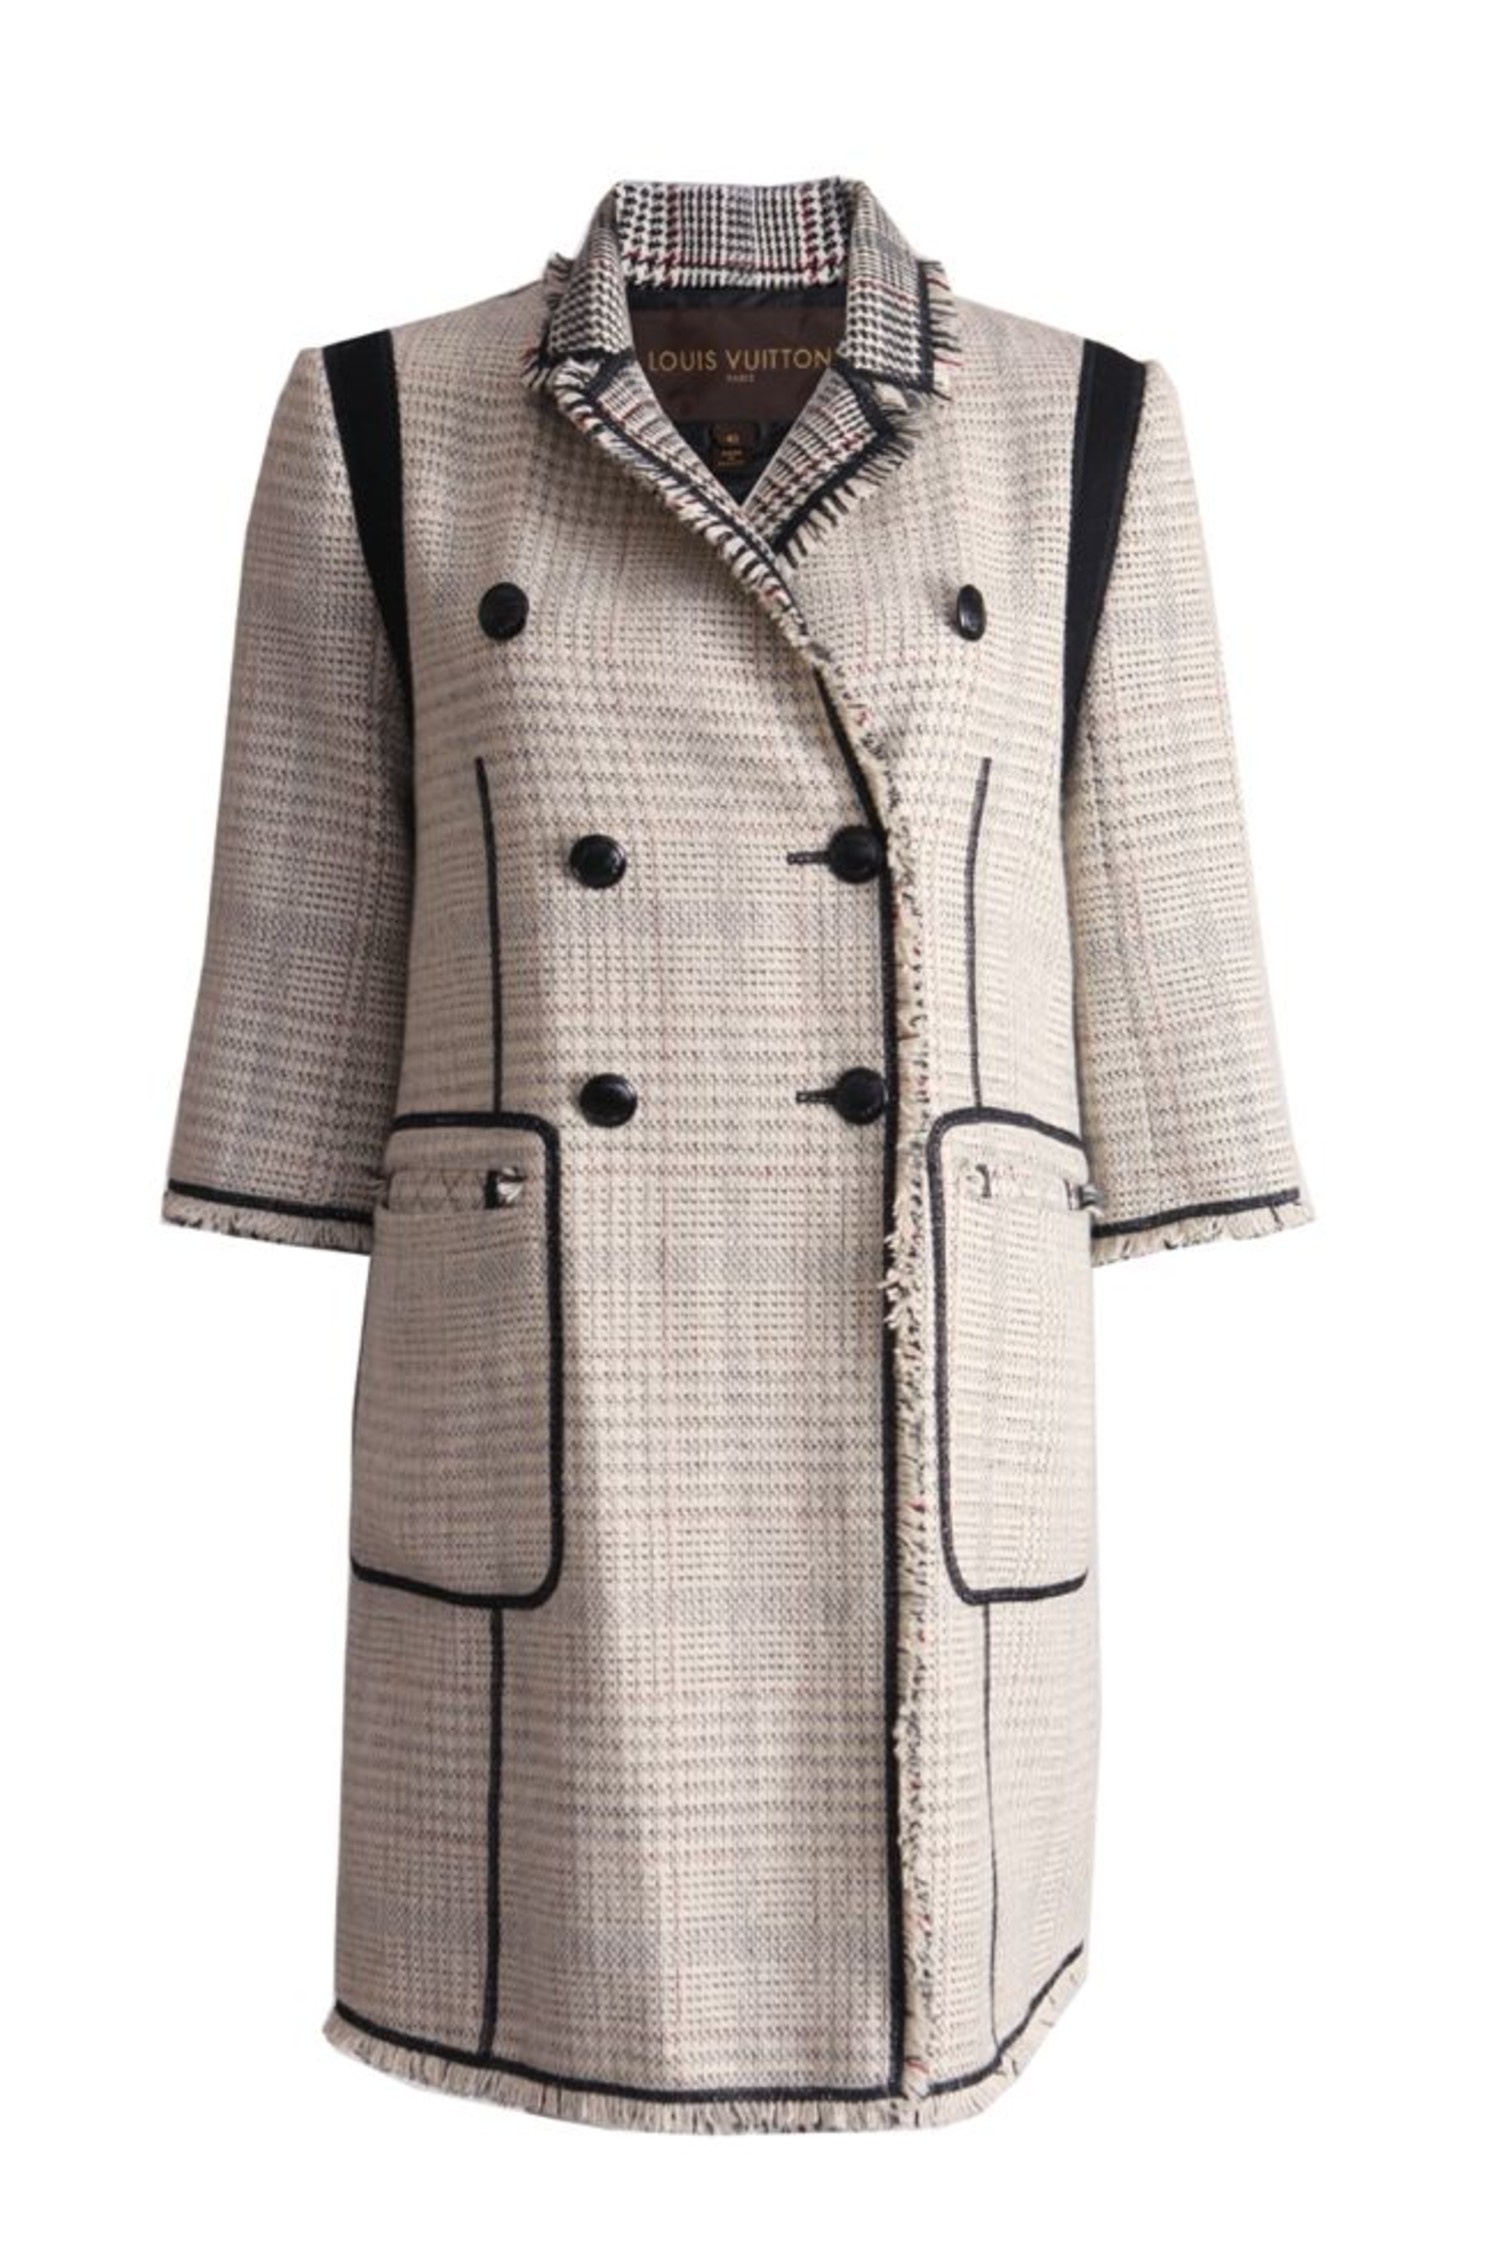 Louis Vuitton, tweed jas met ¾ mouwen maat FR40/S. Unique Designer Pieces